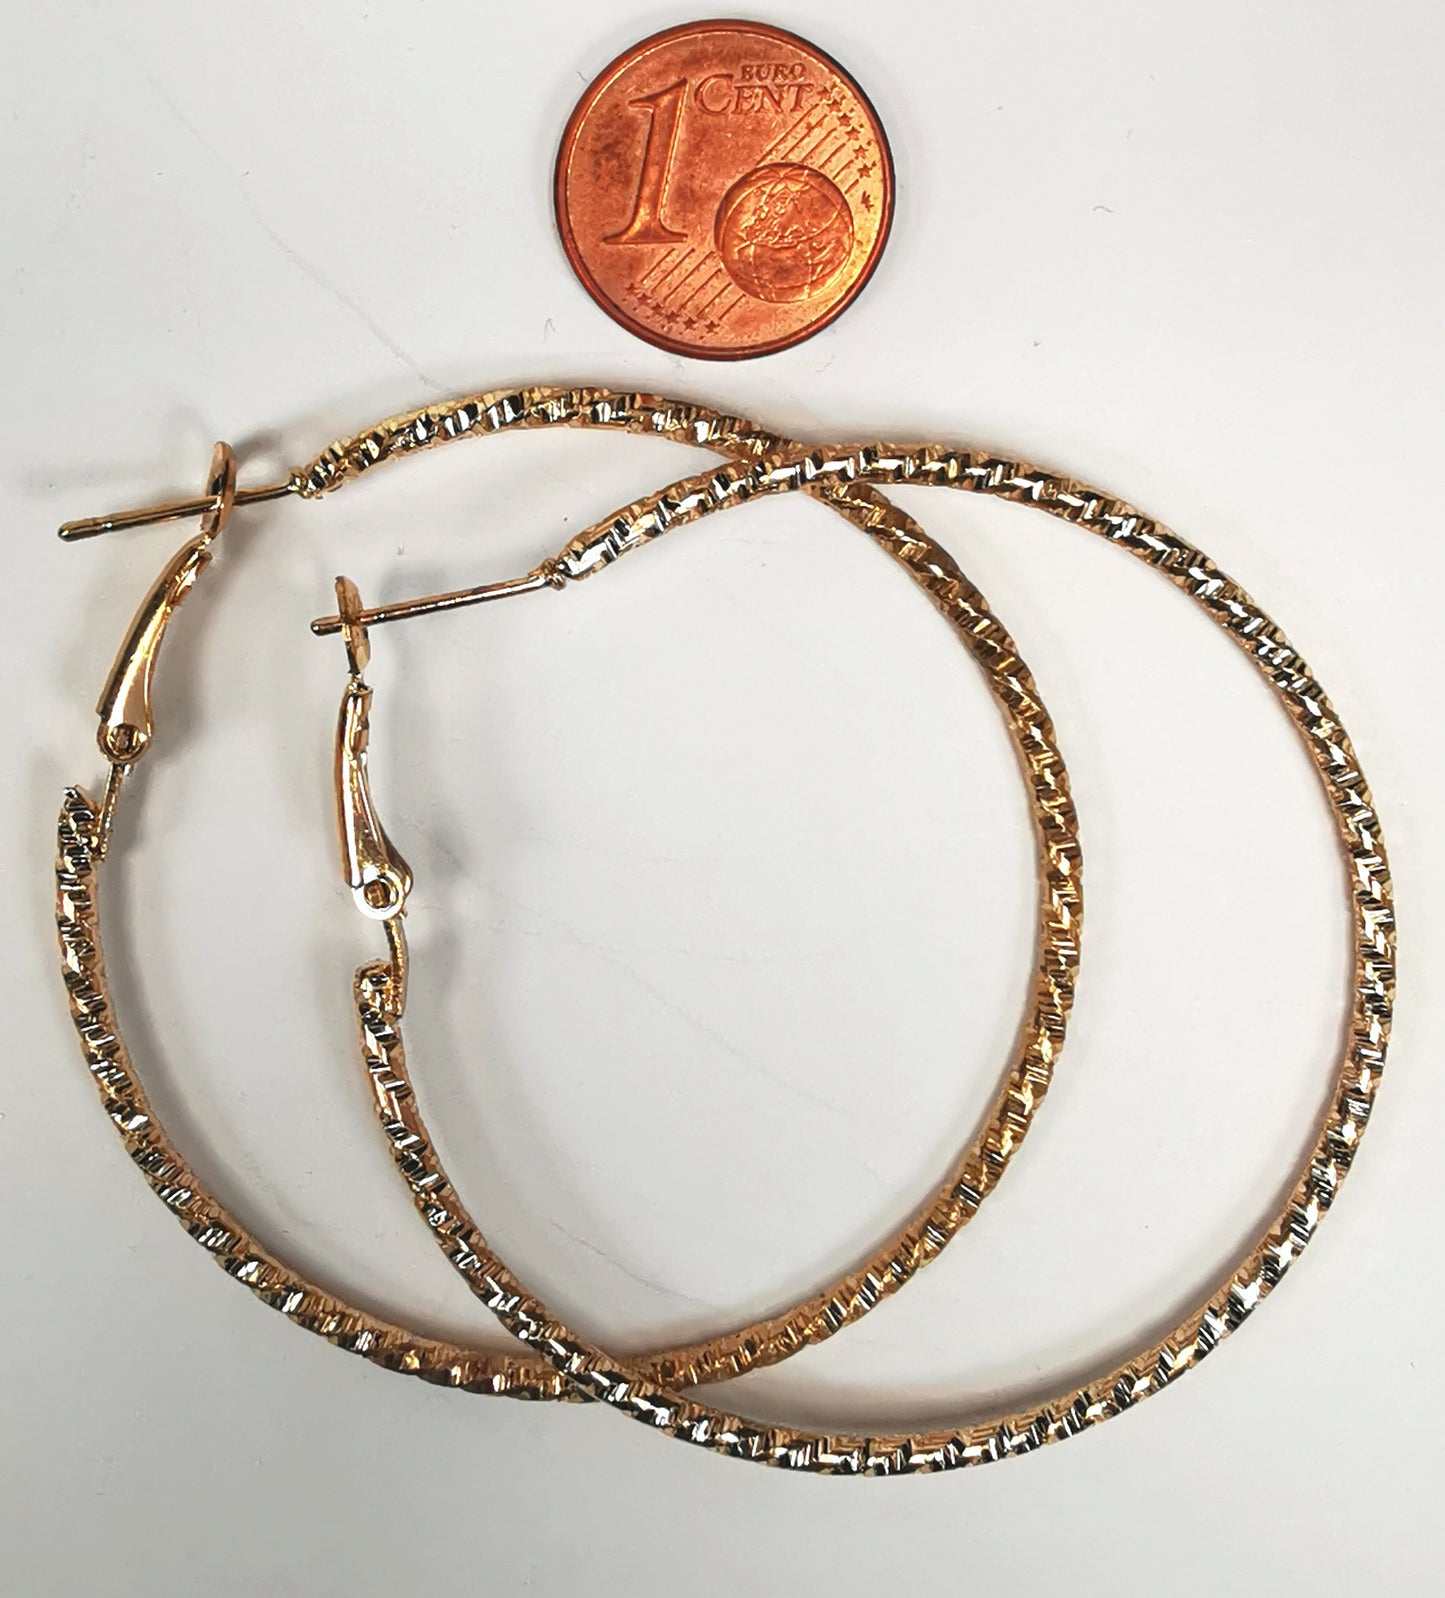 Boucles d'oreilles créoles dorées 50mm de diamètre, fil de 1.5mm, surface texturée. Posées sur fond blanc l'une sur l'autre avec, au dessus, une pièce de 1 centime, vue de dessus.